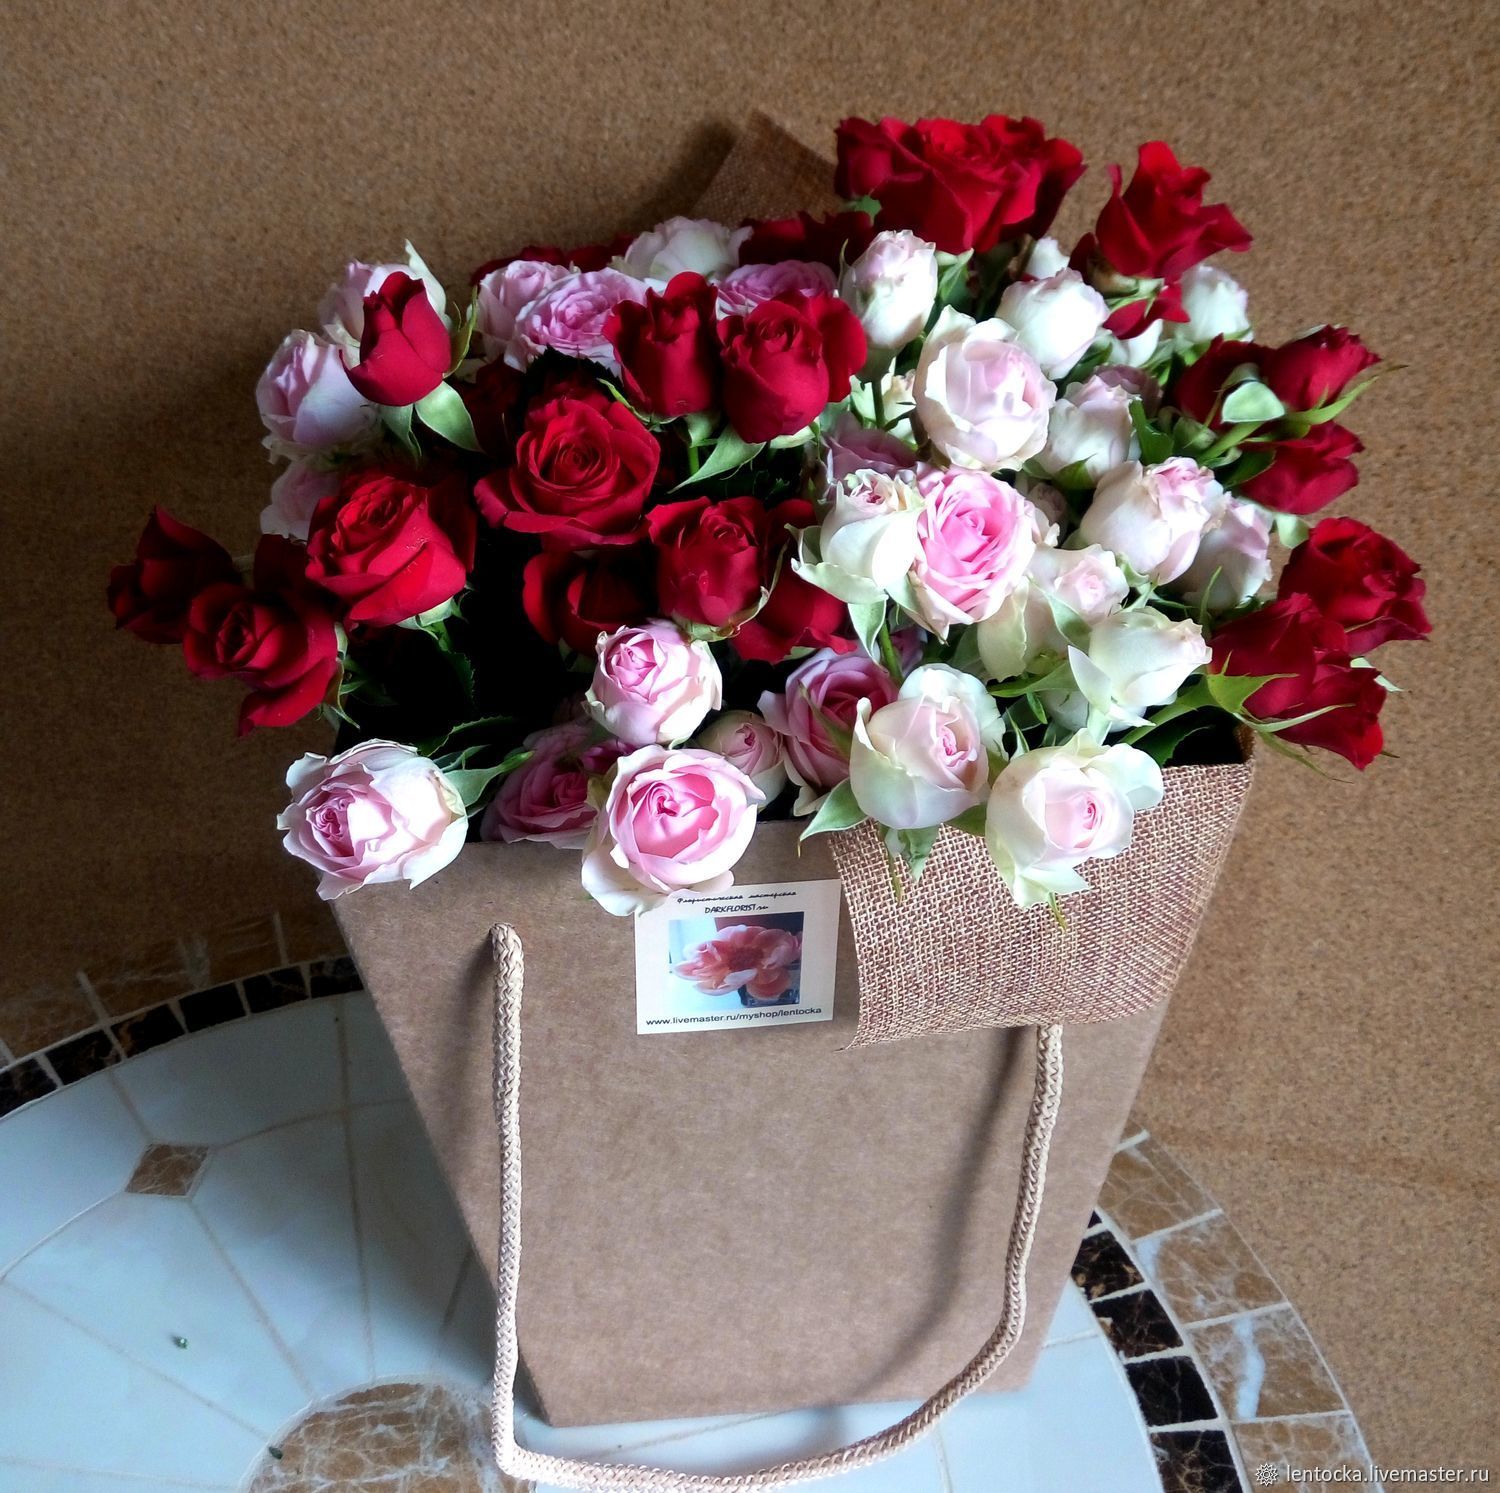 Красивые букеты цветов в упаковке фото